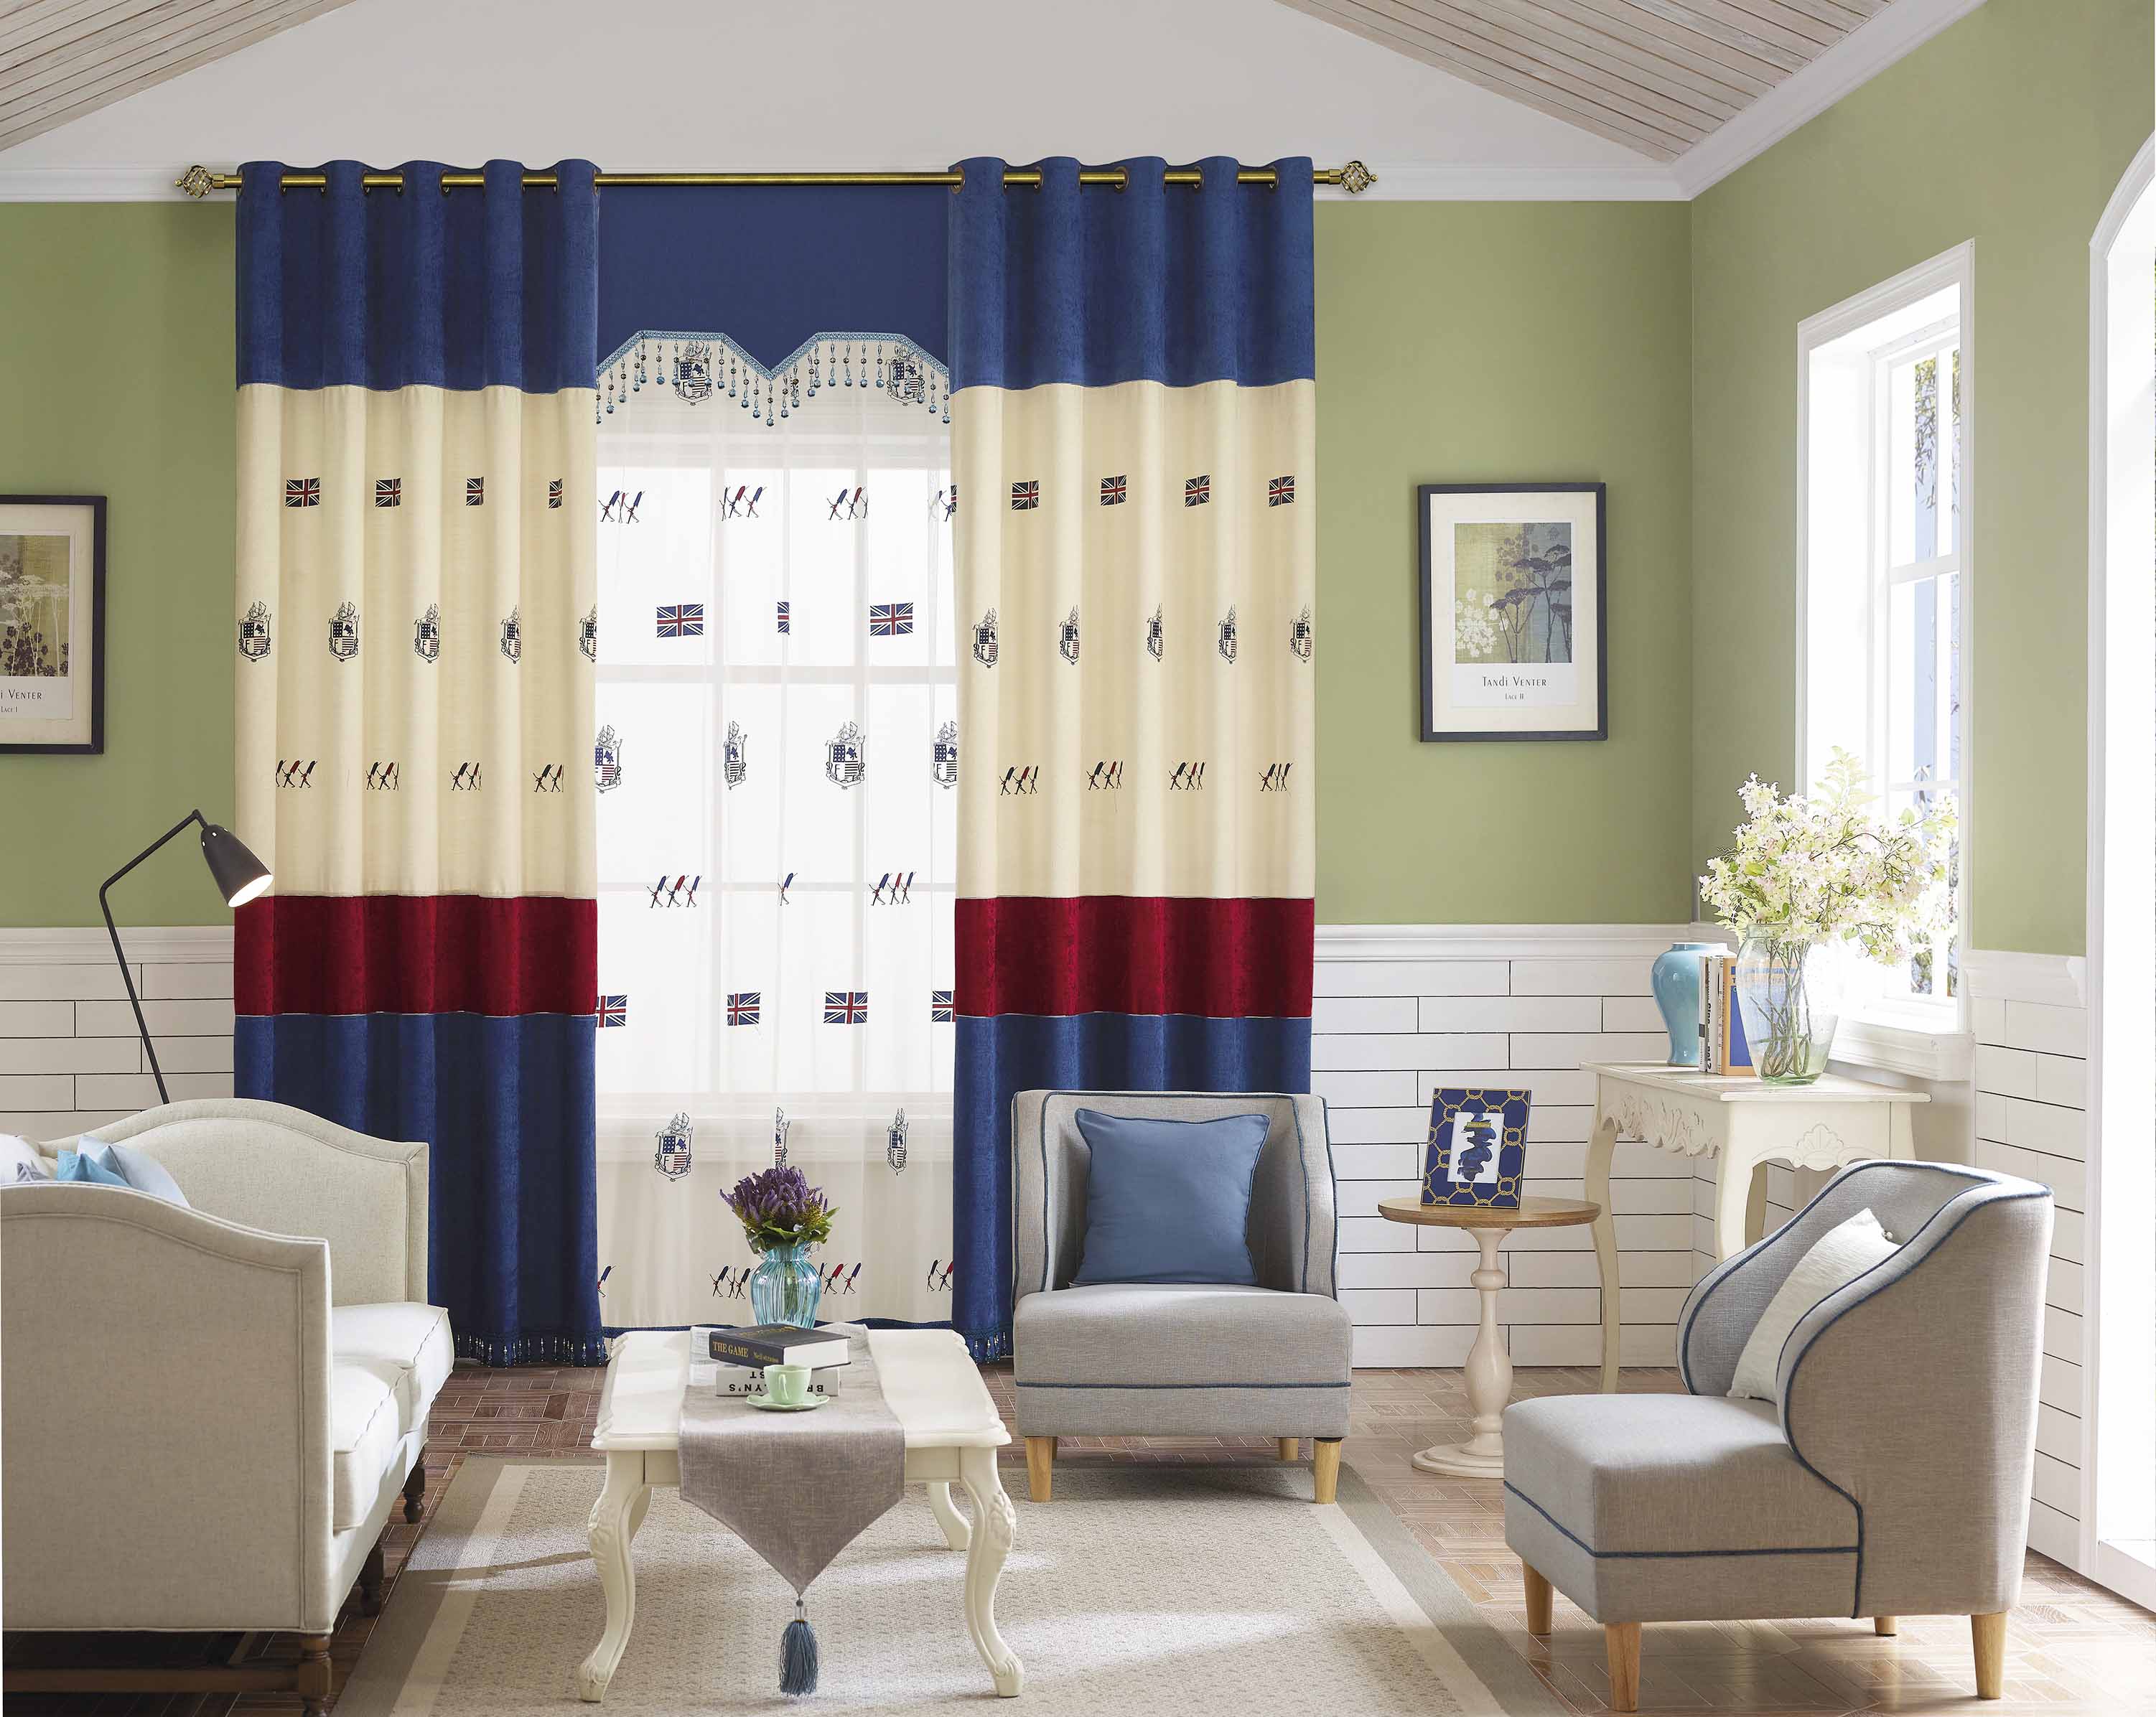 伊莎莱-田园美式客厅窗帘效果图-客厅窗帘图片